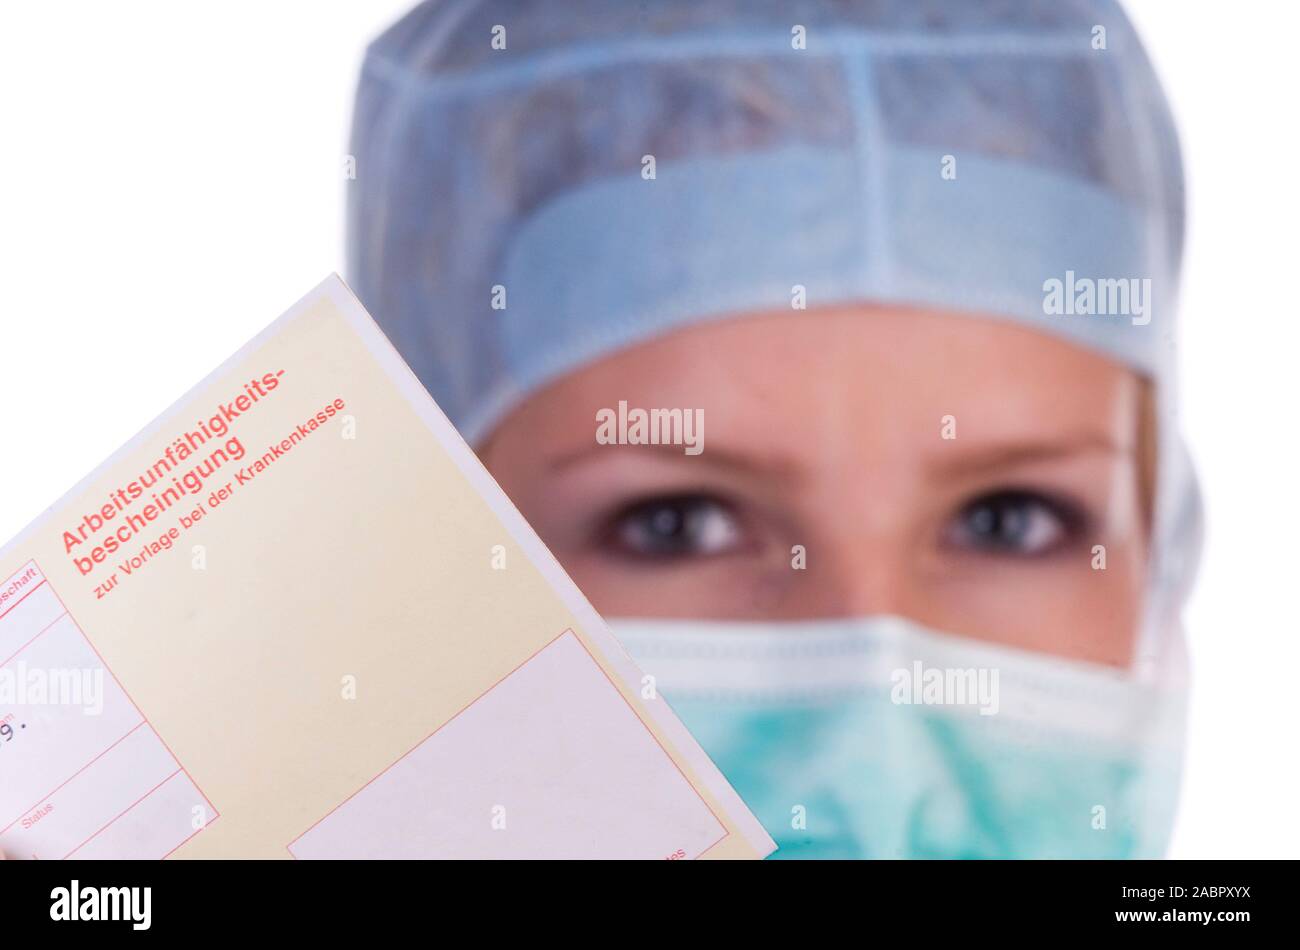 Arzt, Ärztin, OP-Schwester, mit Arbeitsunfähigkeitbescheinigung, signor: Sì, 25,30,35, Jahre, Foto Stock